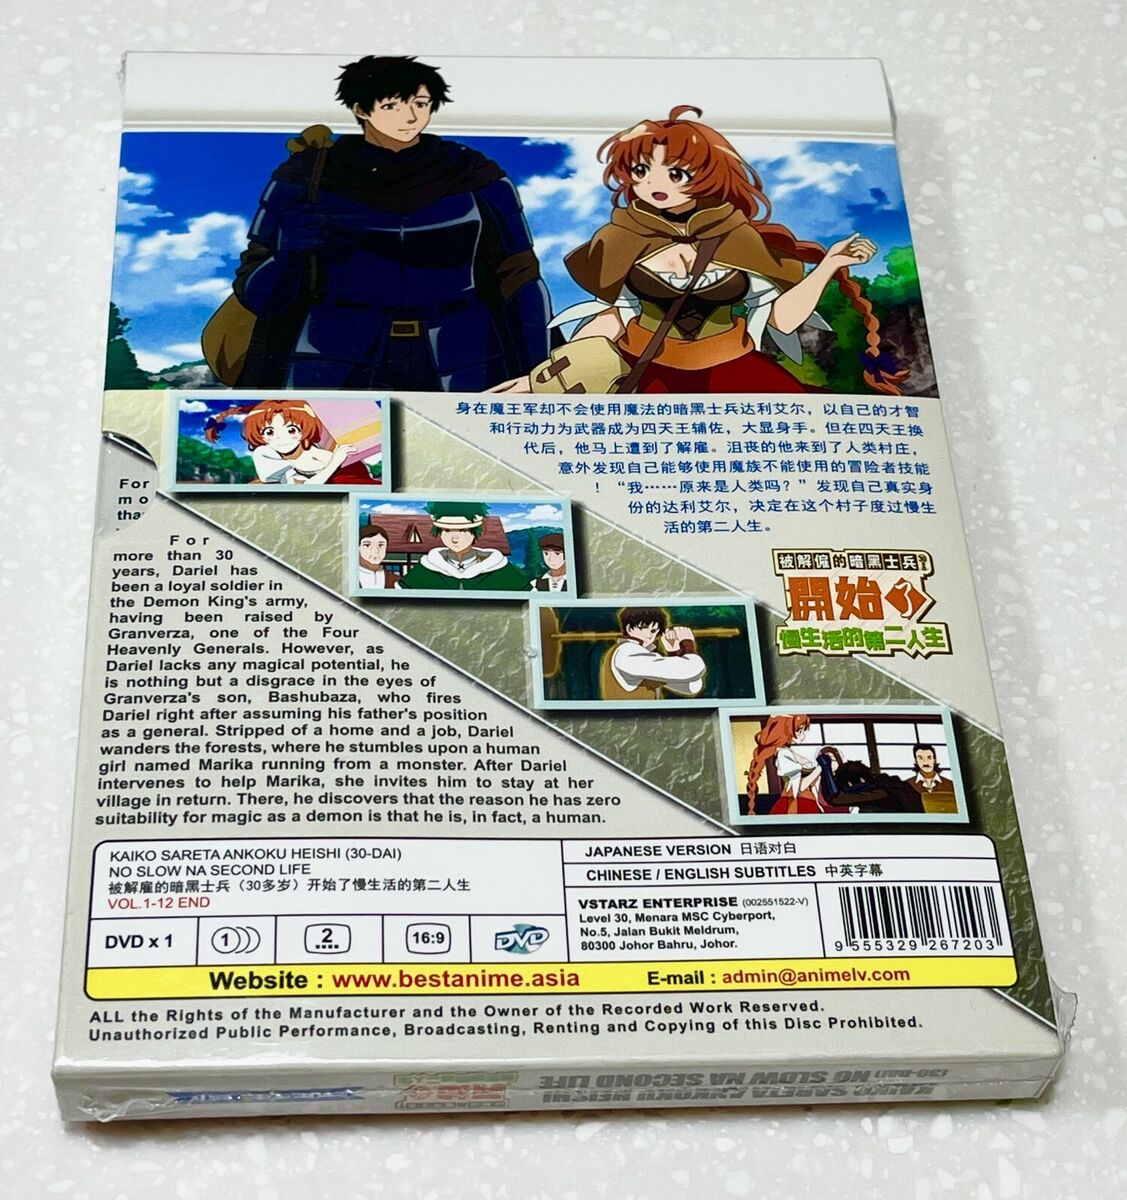 Kaiko Sareta Ankoku Heishi(30-Dai)No Slow Na Second Life (1-12End) Anime DVD